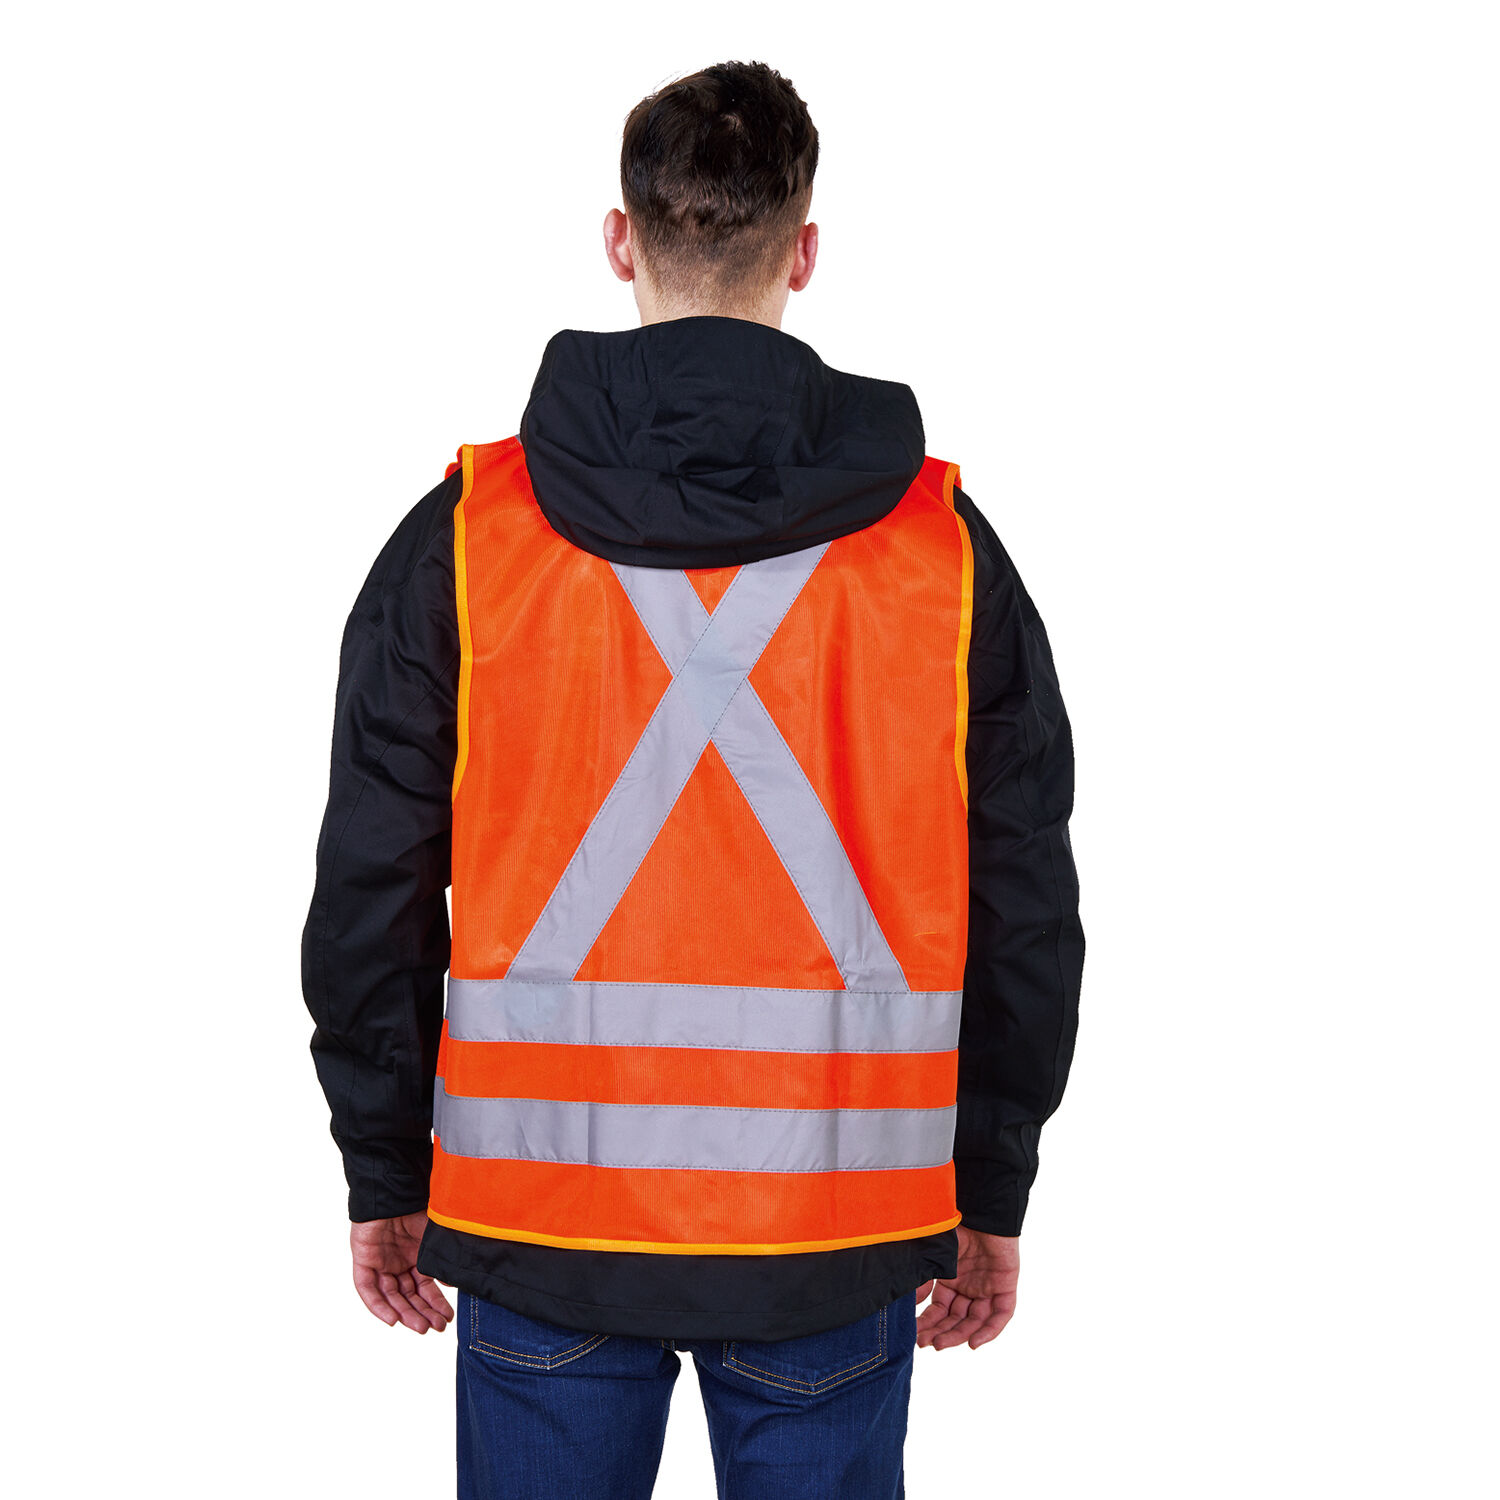 Gilet de sécurité haute visibilité avec bandes réfléchissantes et tissu en  maille Orange fluo Taille toutes